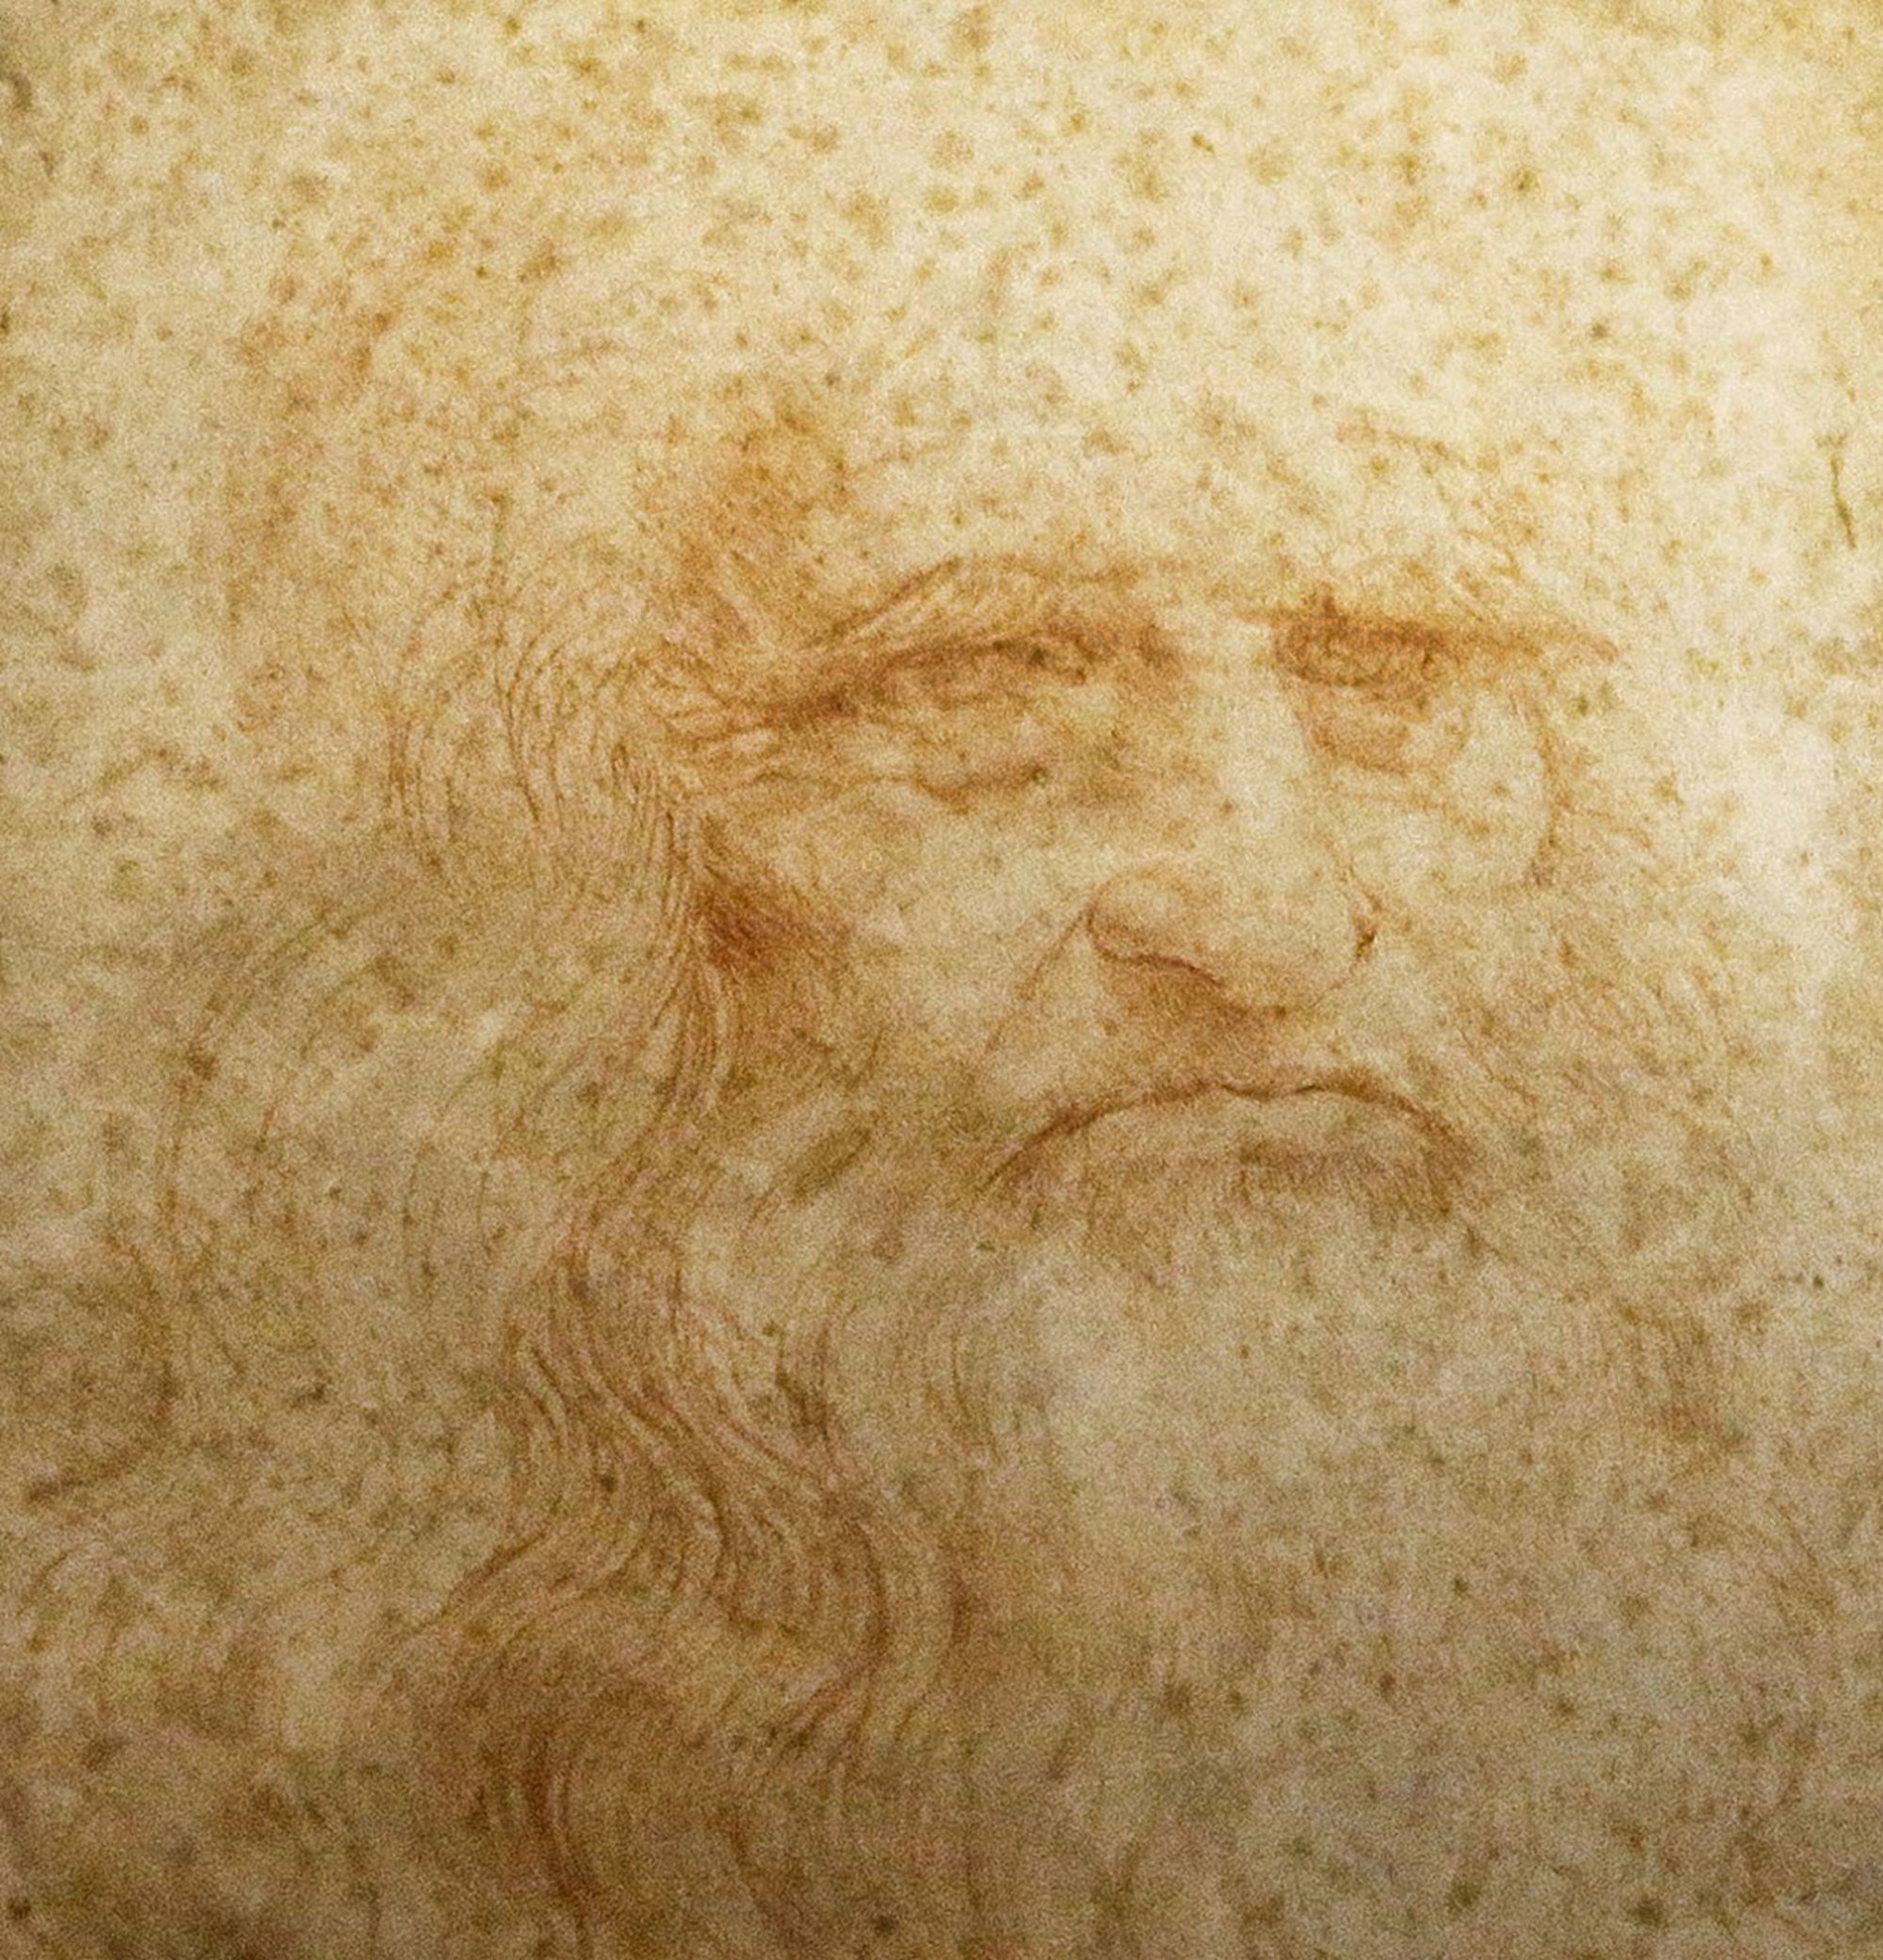 Haarsträhne entdeckt: Forscher wollen Leonardo da Vincis DNA-Code knacken – derStandard.at